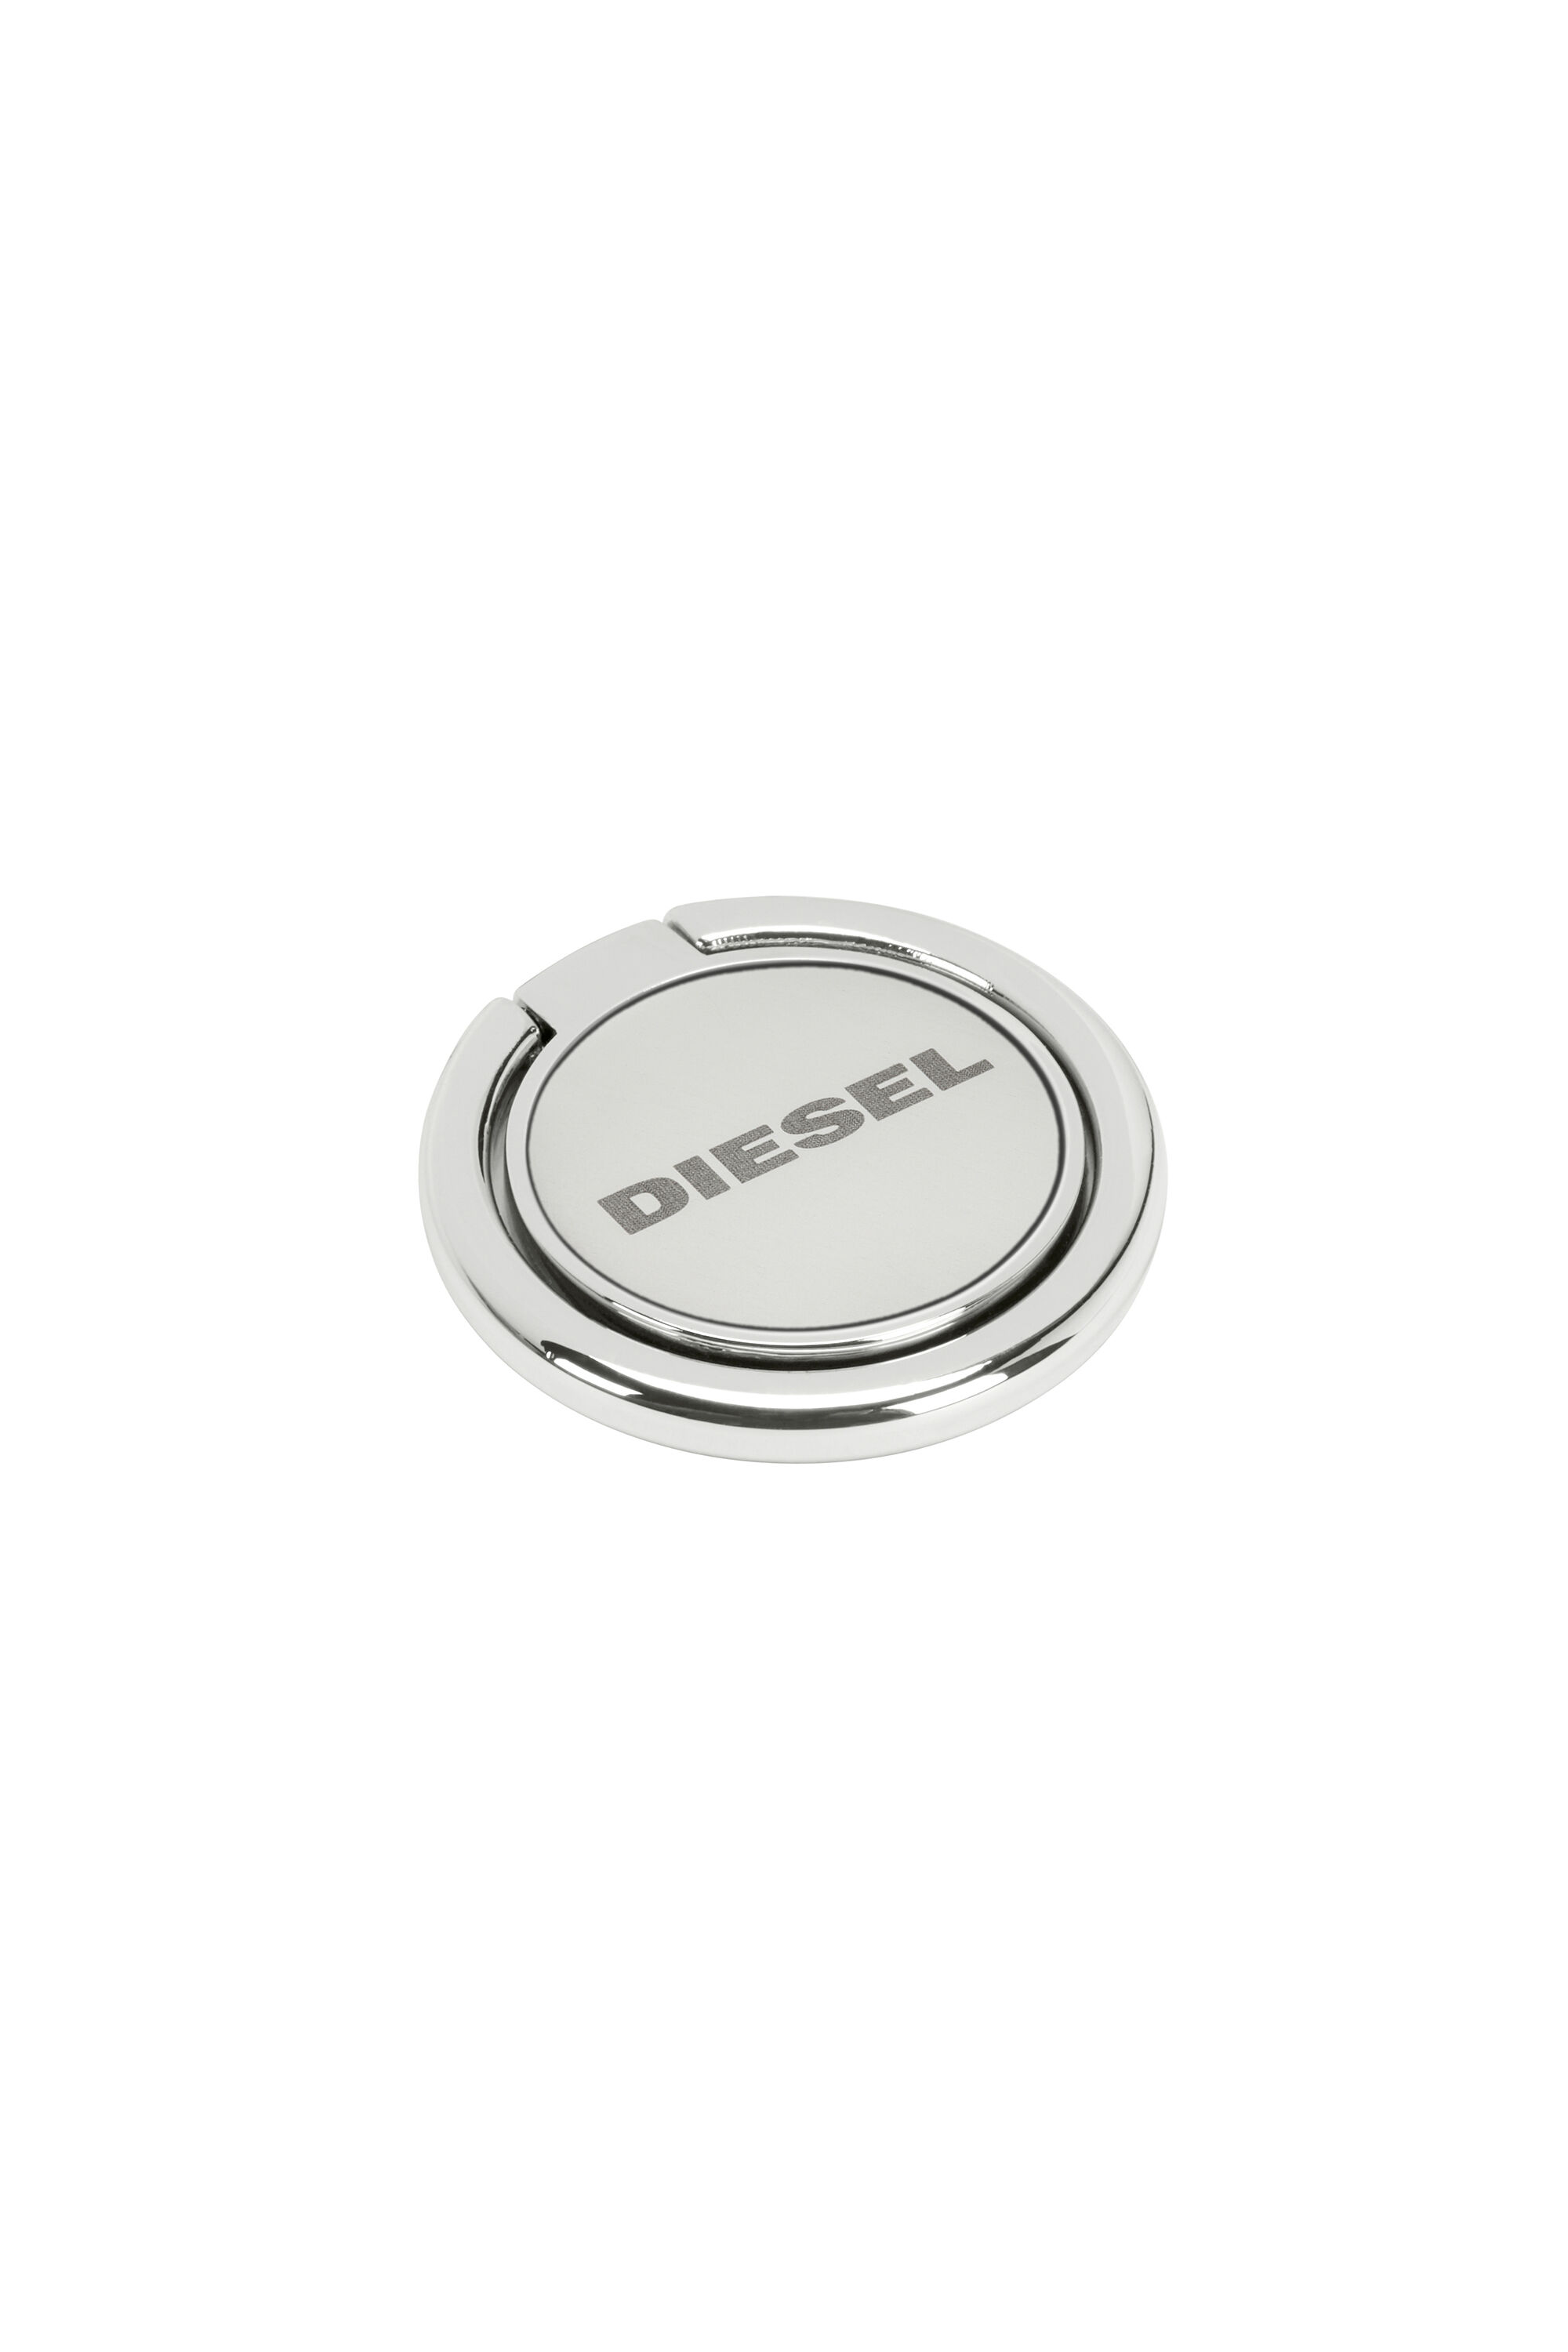 Diesel - DIESEL UNIVERSAL RING STAND, Silver - Image 1